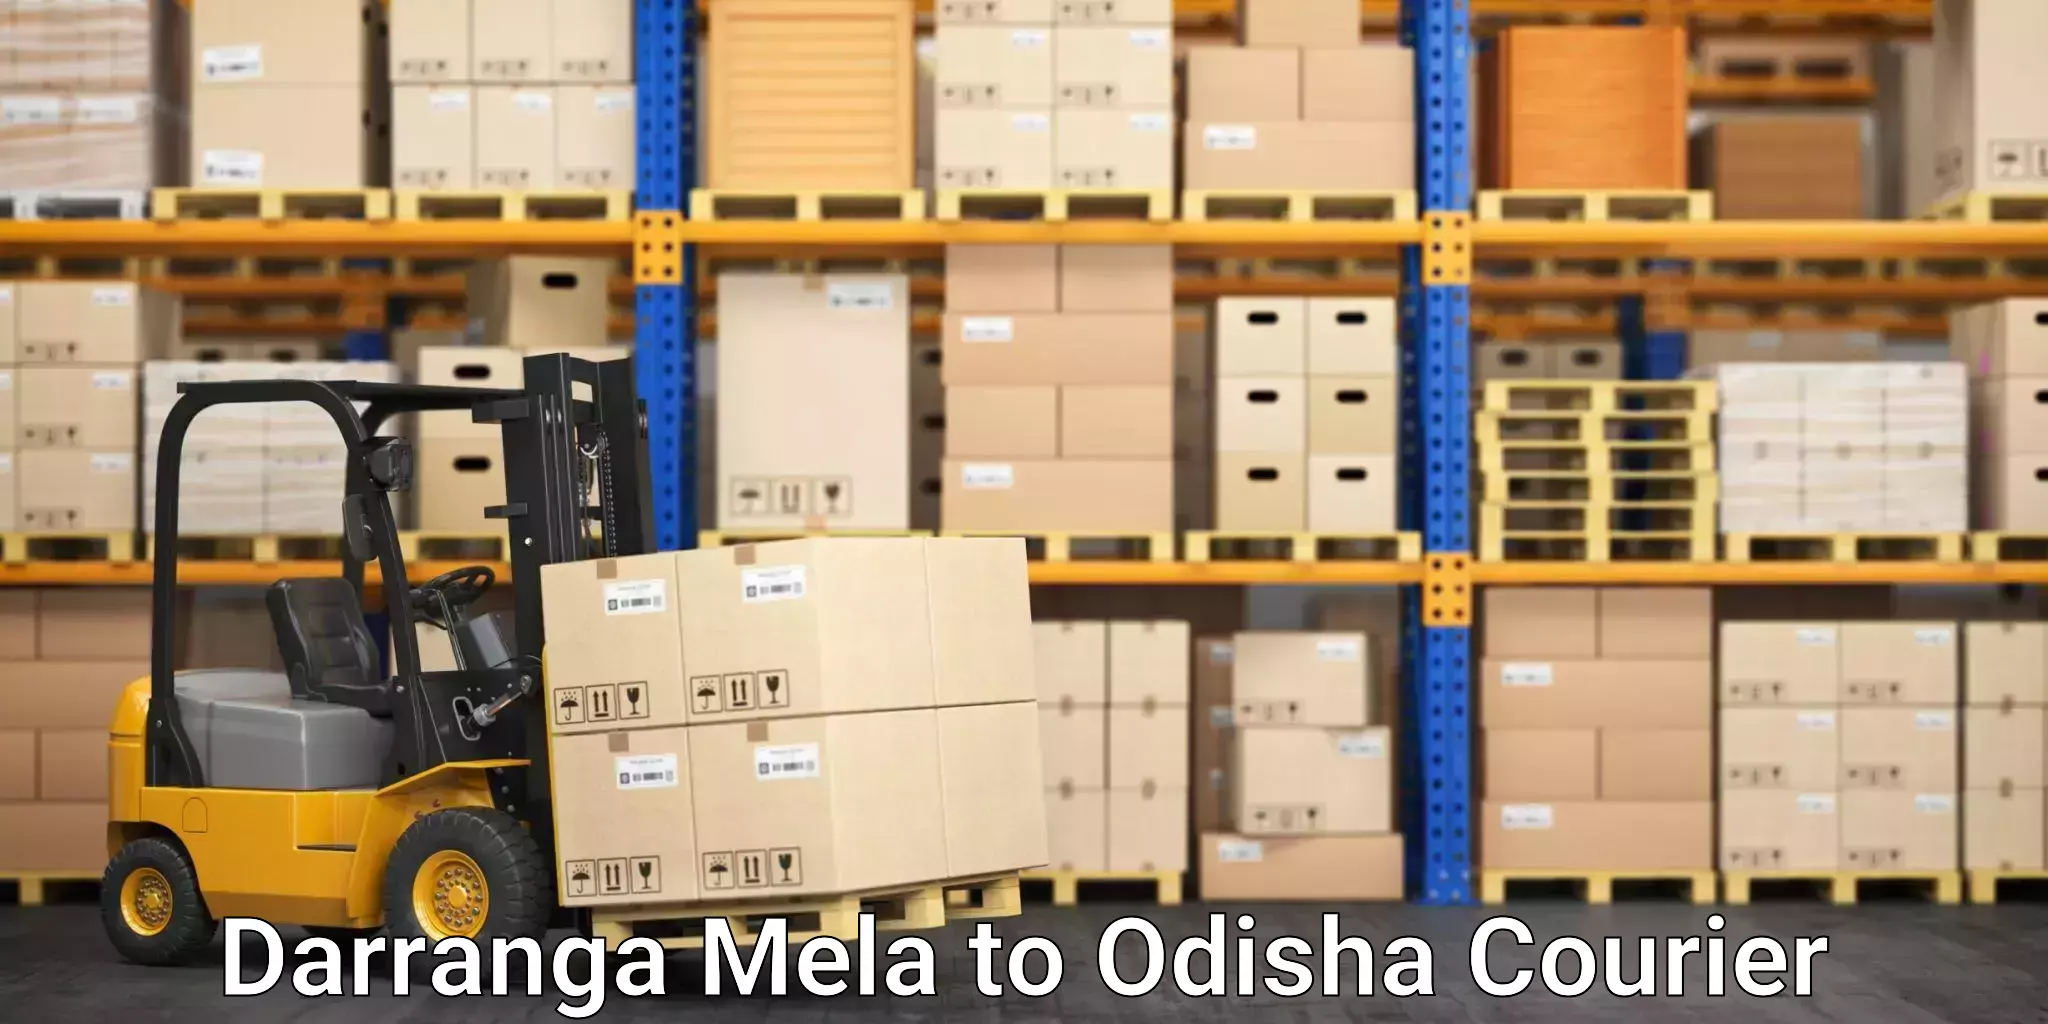 Express courier facilities Darranga Mela to Baisinga